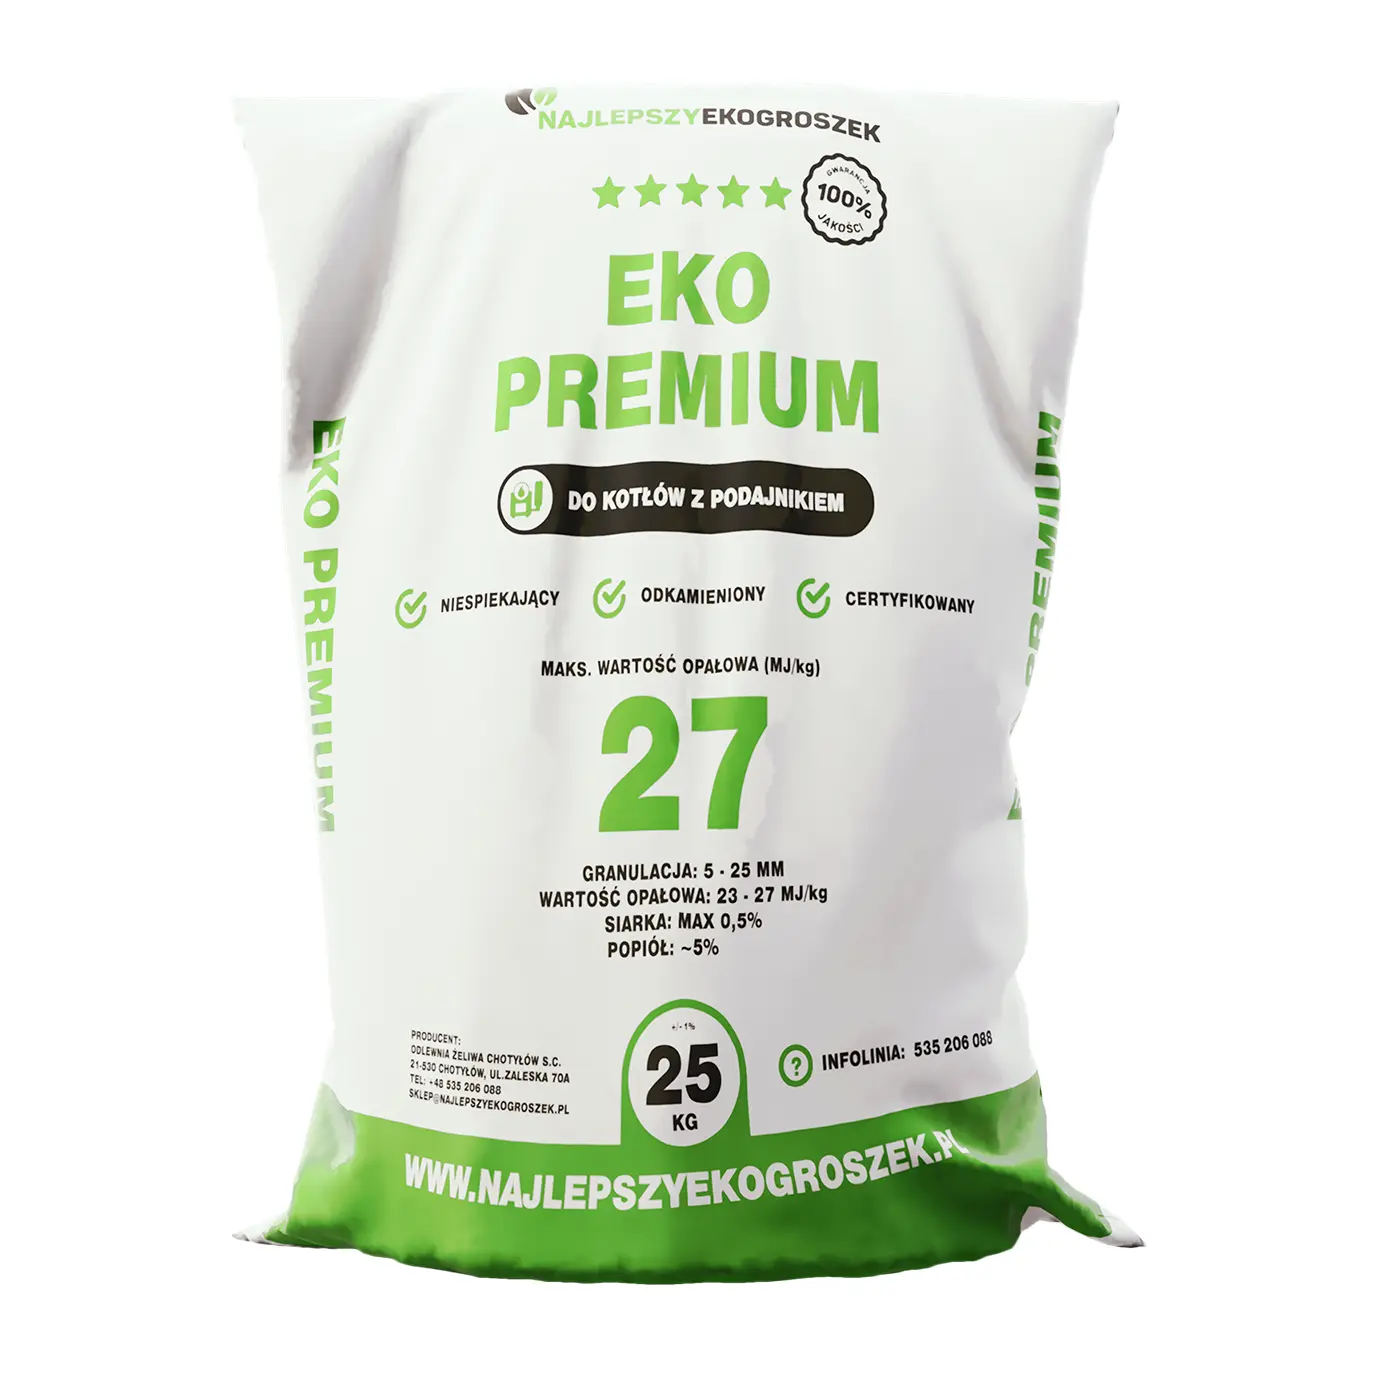 Wysokiej jakości ekogroszek Eko Premium - idealny wybór dla świadomych ekologii.